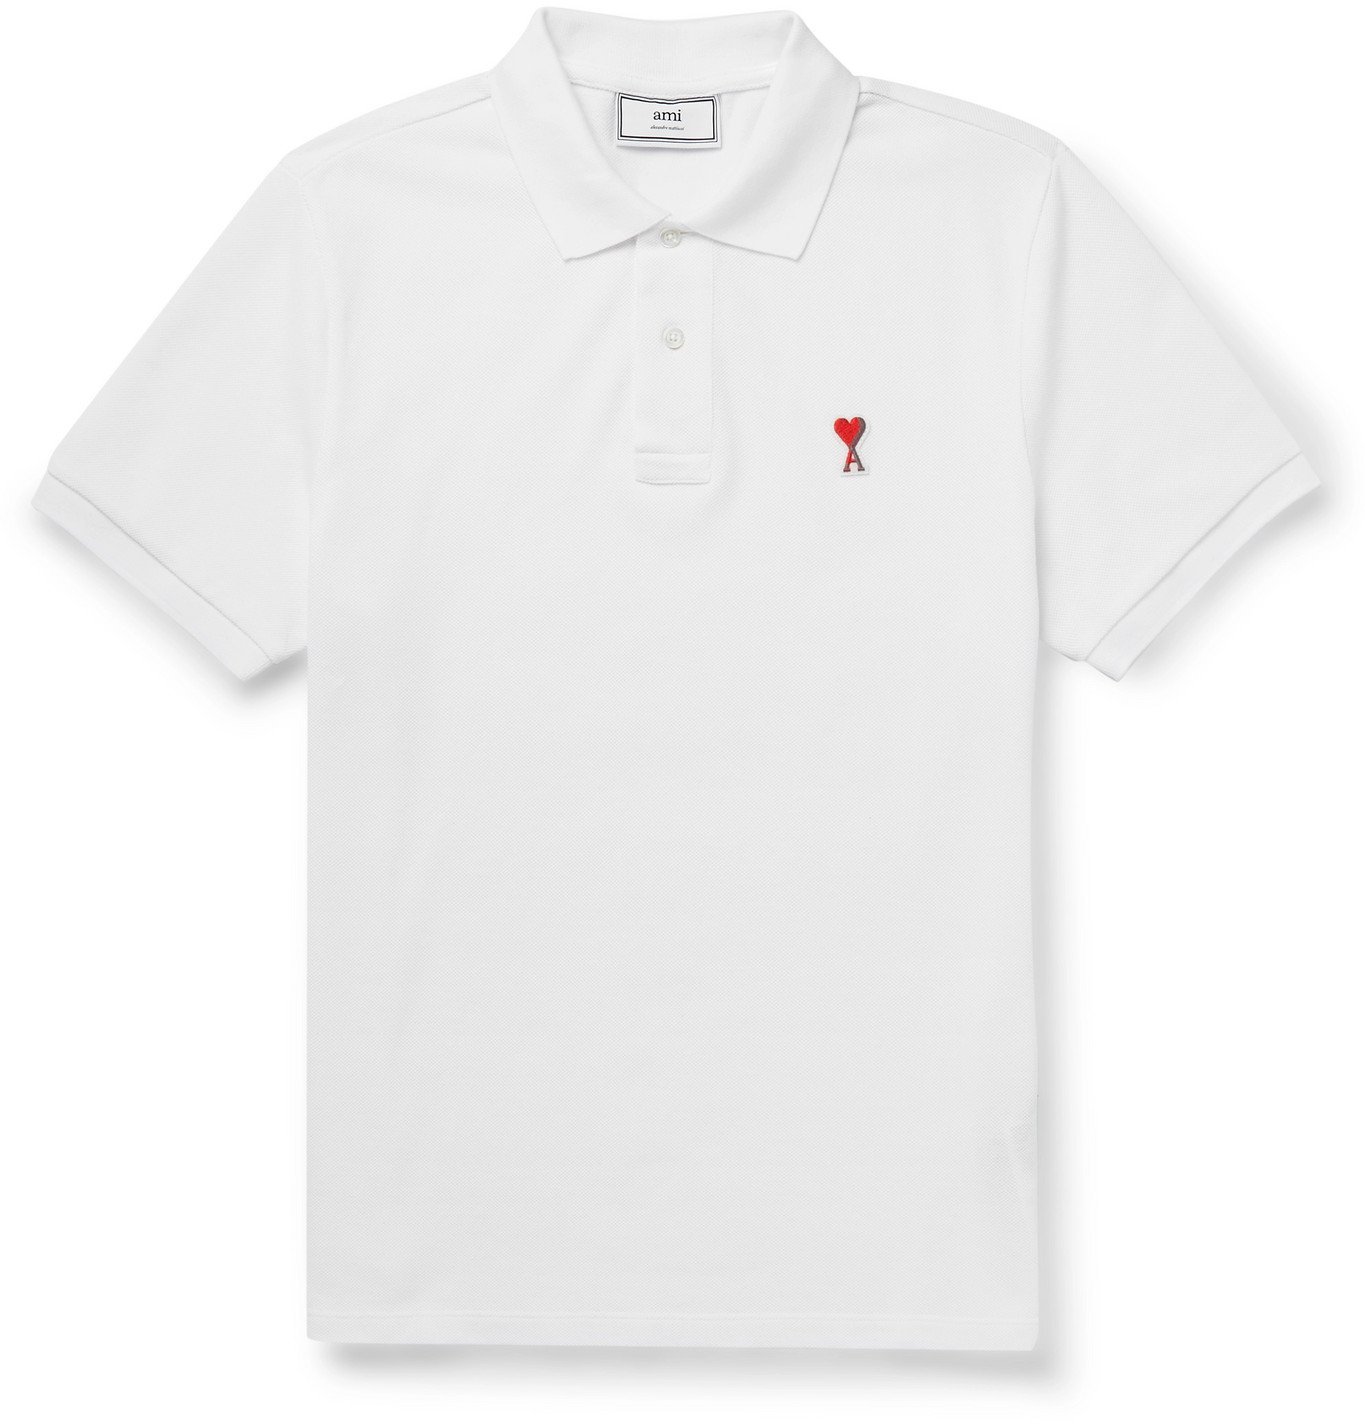 AMI - Logo-Appliquéd Cotton-Piqué Polo Shirt - White AMI